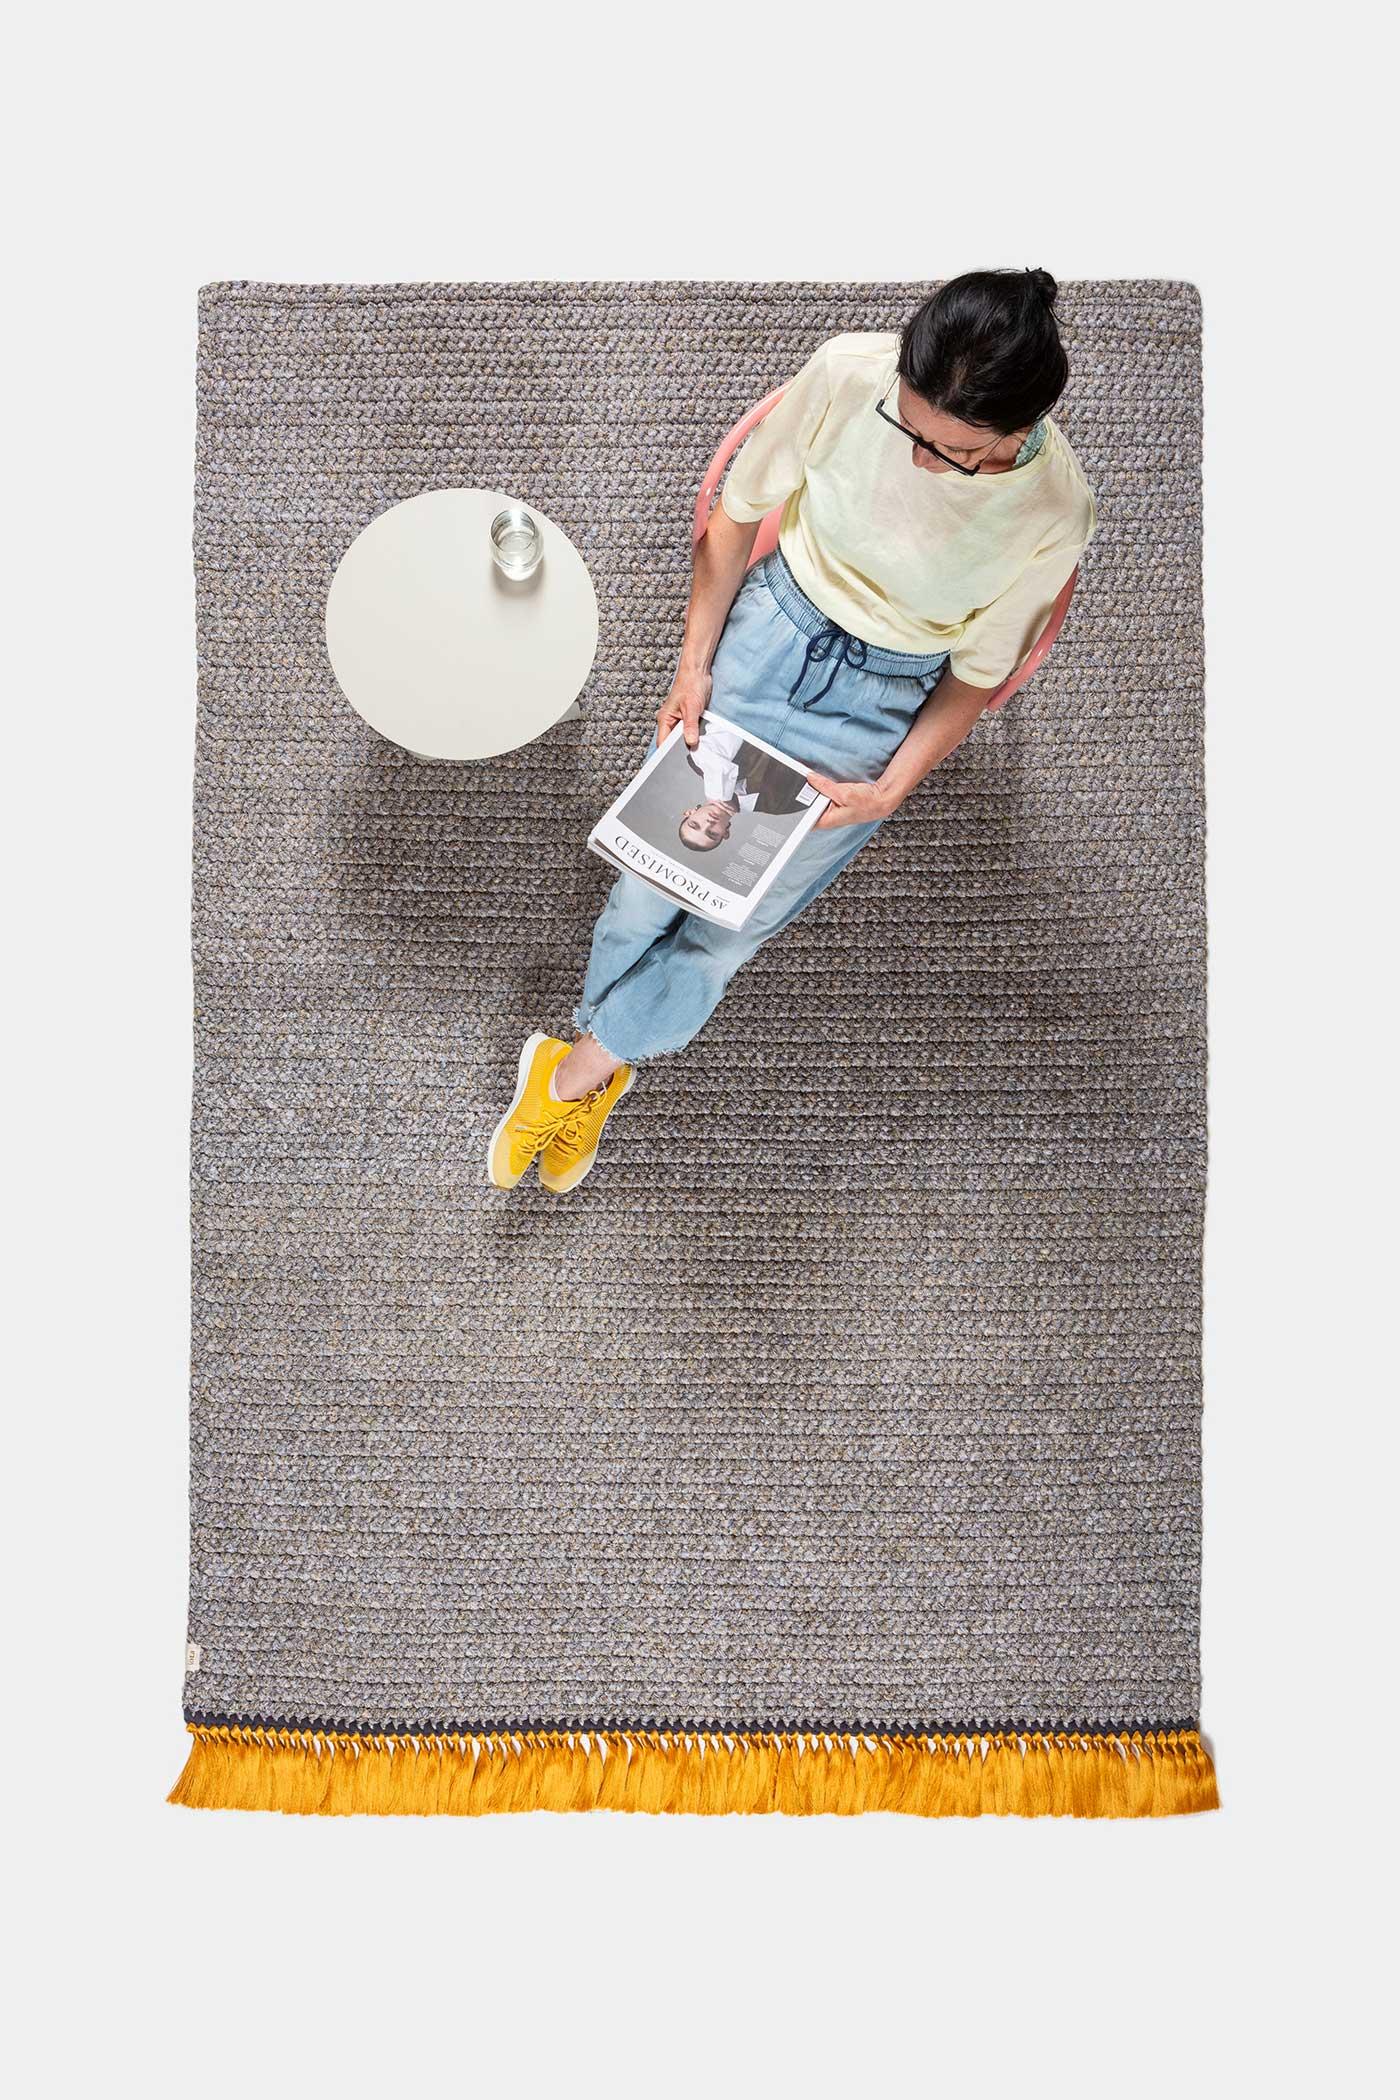 IOTA-Teppiche sind dick, weich, handgestrickt und luxuriös, dreimal dicker als ein Standardteppich. Die Two Tone Medium Teppiche erzeugen einen subtilen Farbverlauf, der jeden Raum erhellt. Sie eignen sich sowohl für eine intime Ecke im Wohnbereich